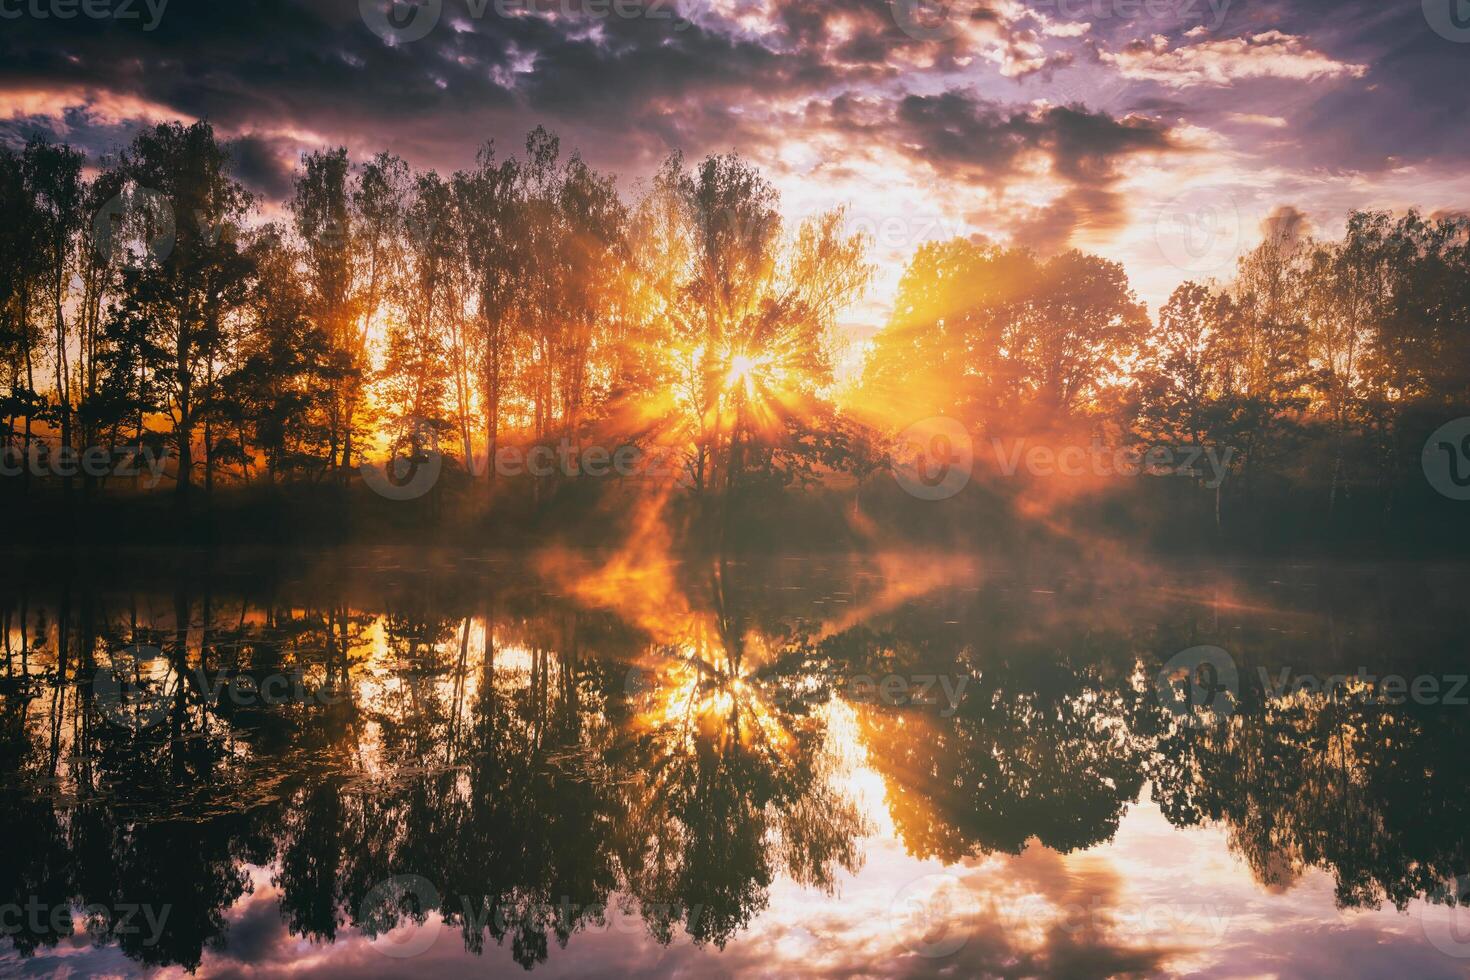 dageraad Aan een meer of rivier- met een lucht weerspiegeld in de water, berk bomen Aan de kust en de zonnestralen breken door hen en mist in herfst. esthetiek van wijnoogst film. foto